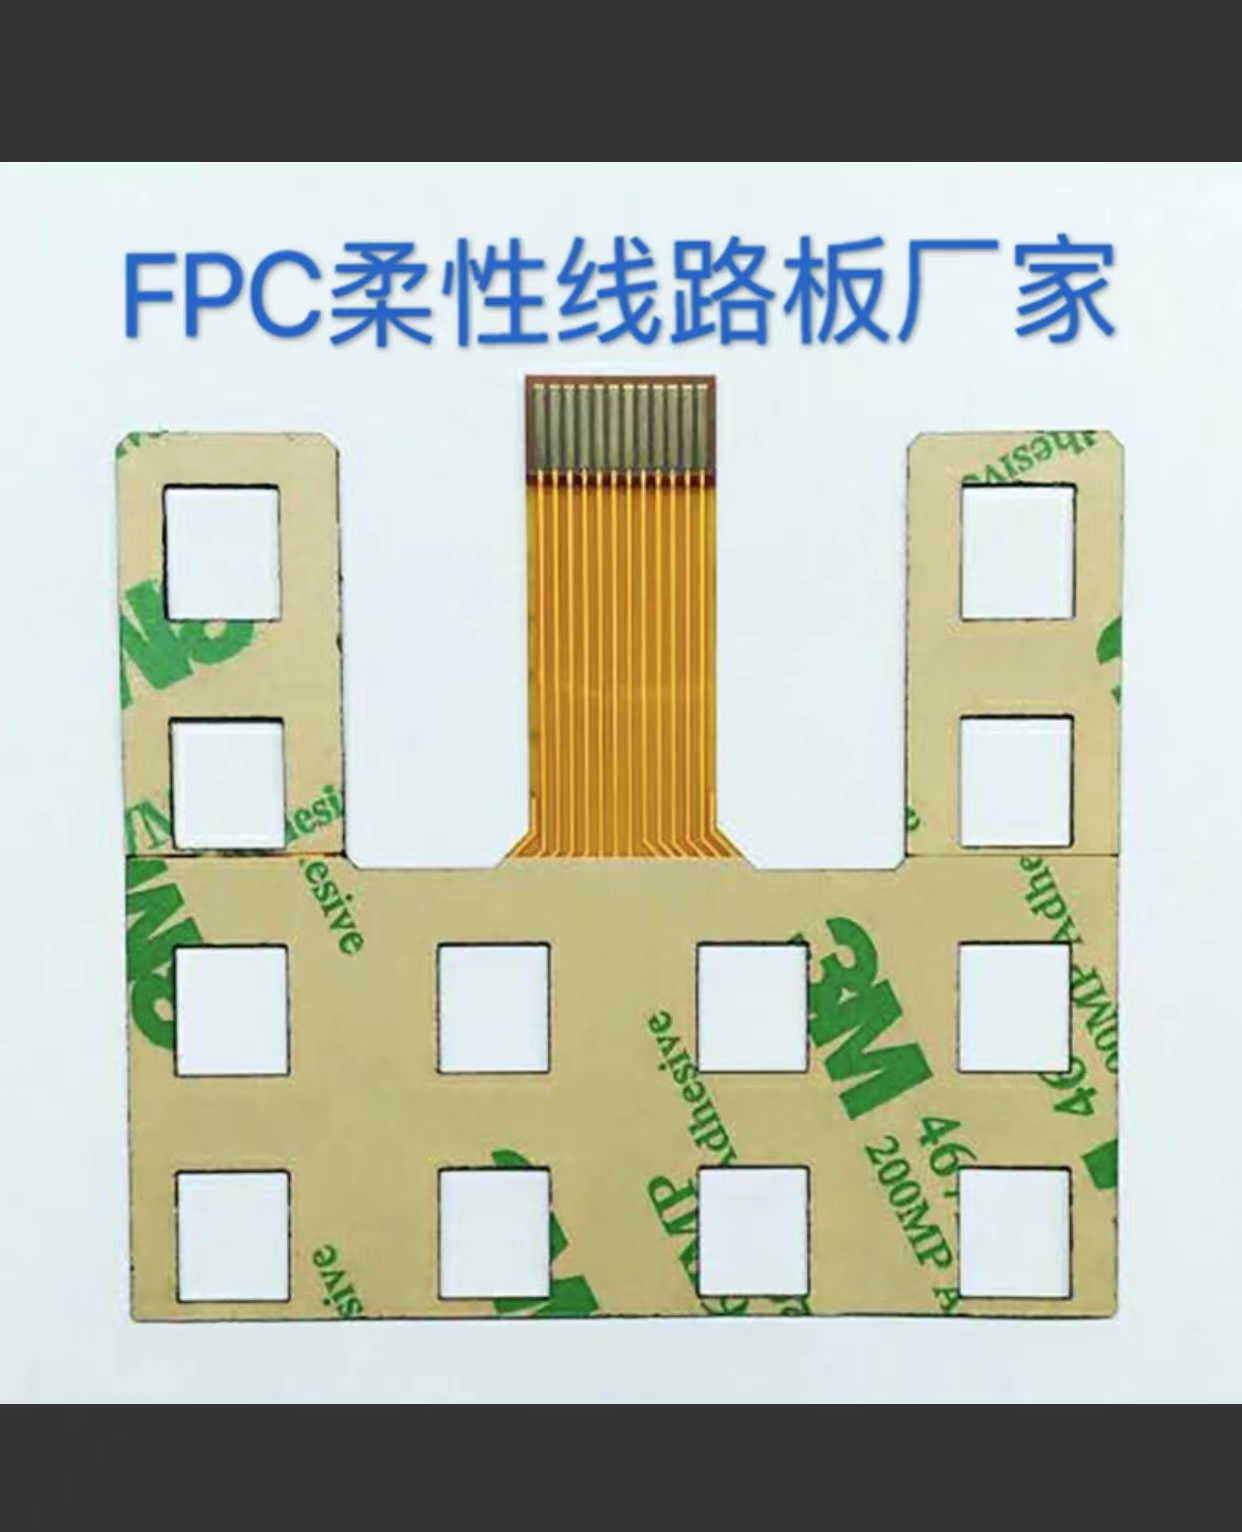 广州柔性电路板厂家直销批发多少钱 哪家品牌好 fpc排线线路板